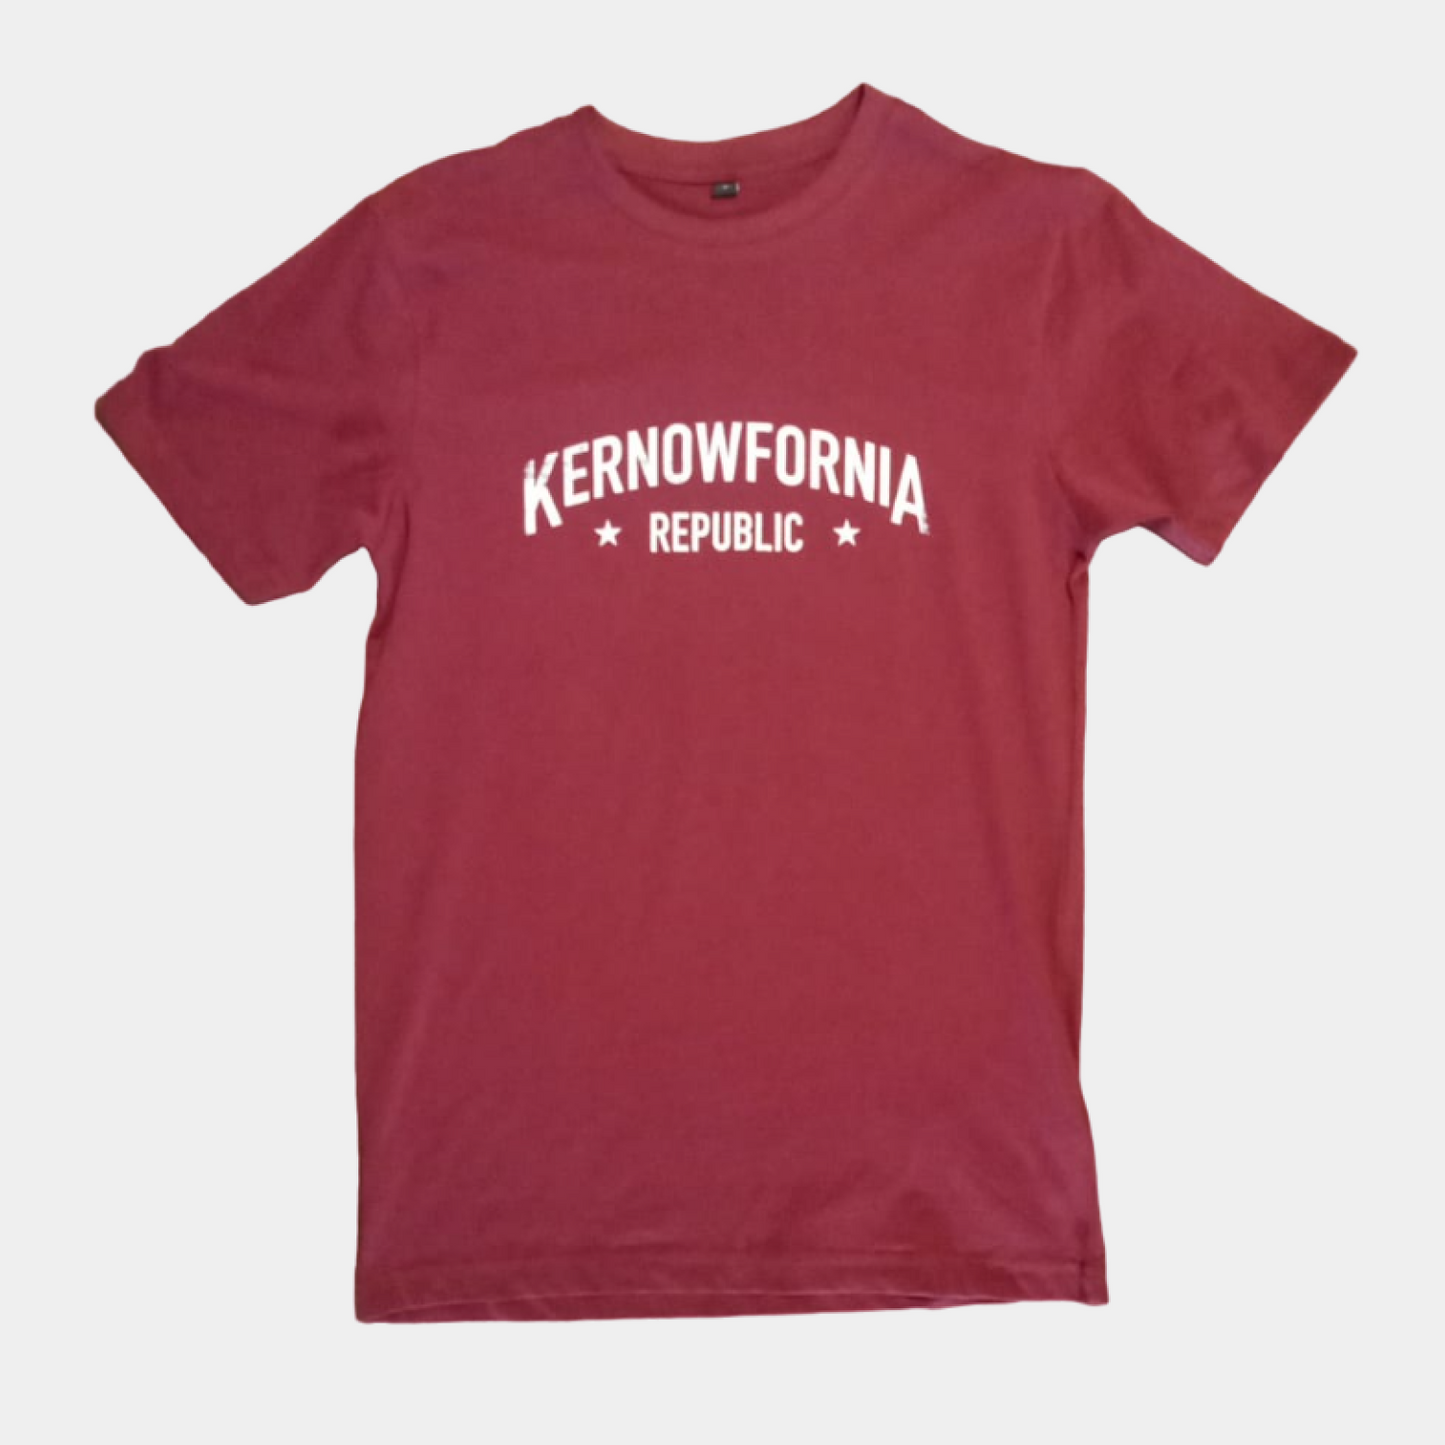 Kernowfornia Republic T-Shirt 2 (no bear)